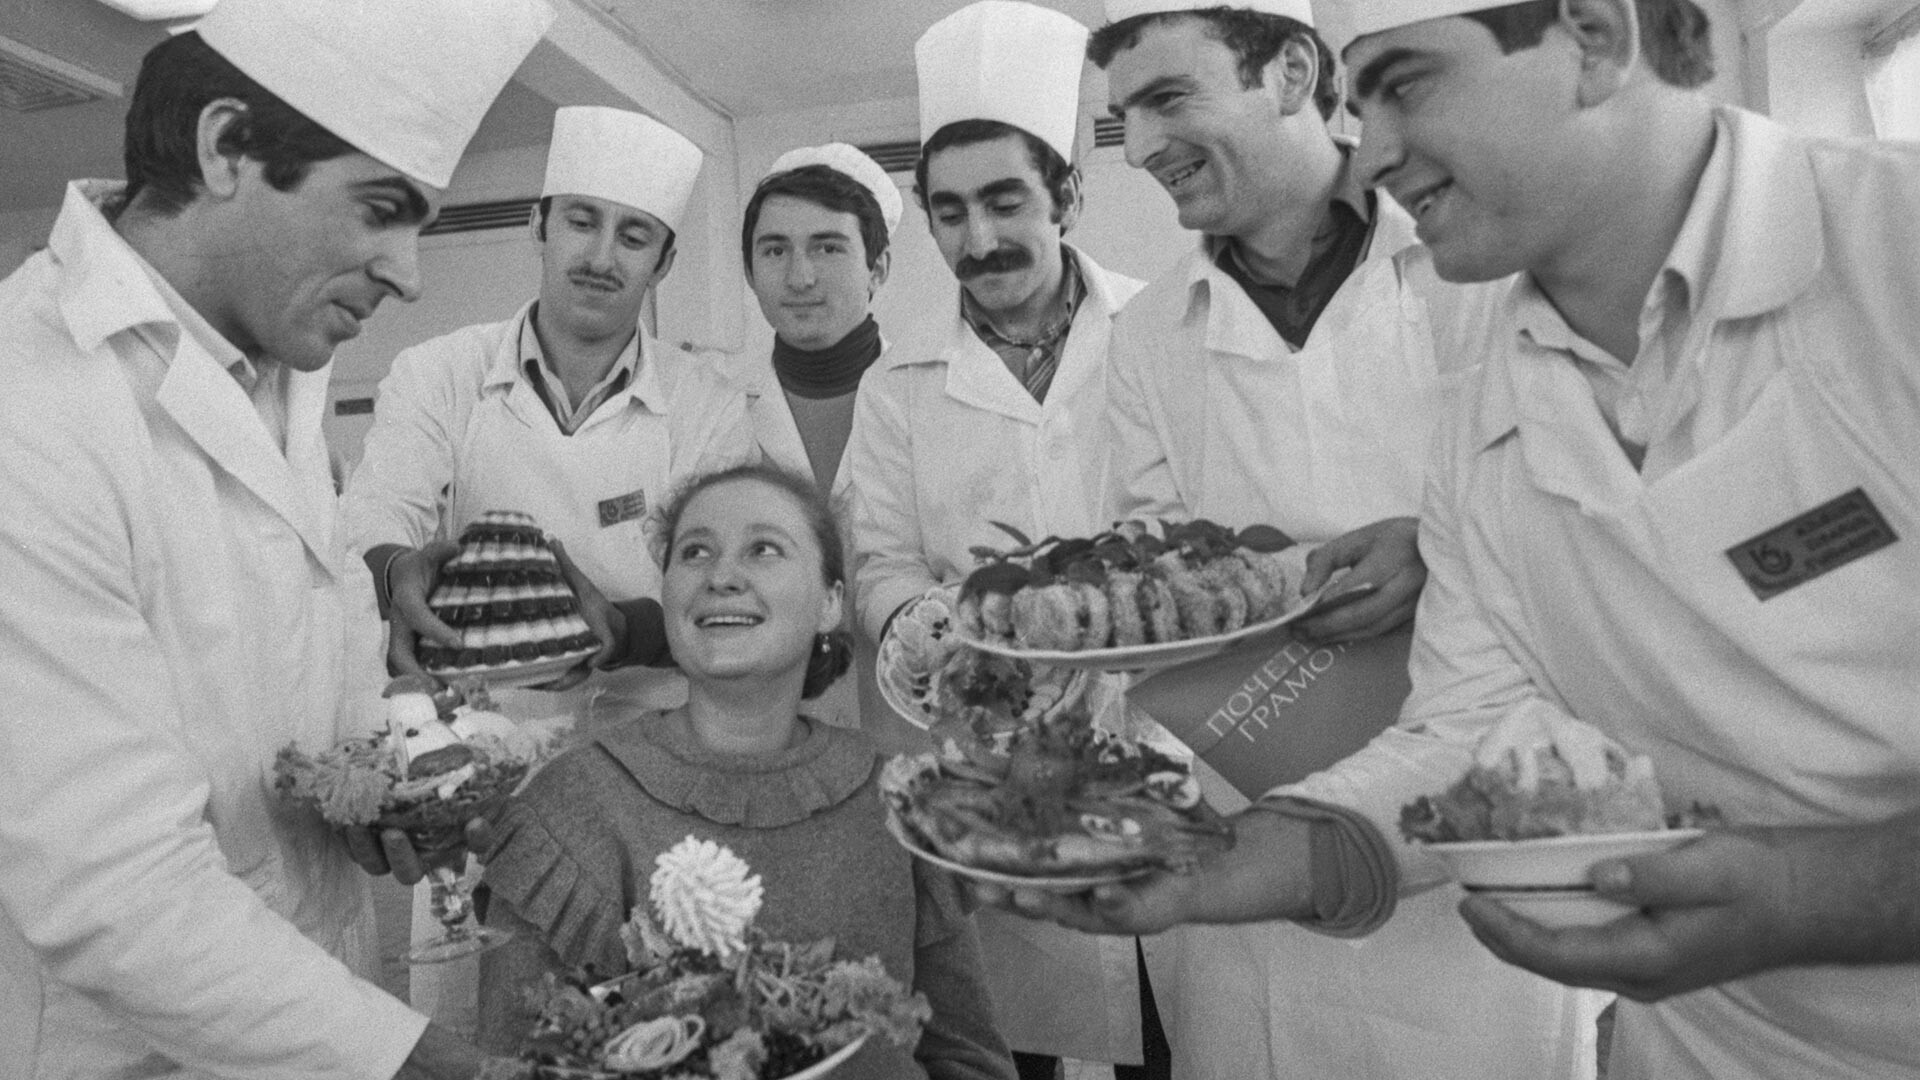 Seis vencedores masculinos apresentam suas criações à colega Nona Berelidze na Geórgia soviética, em 6 de março de 1986